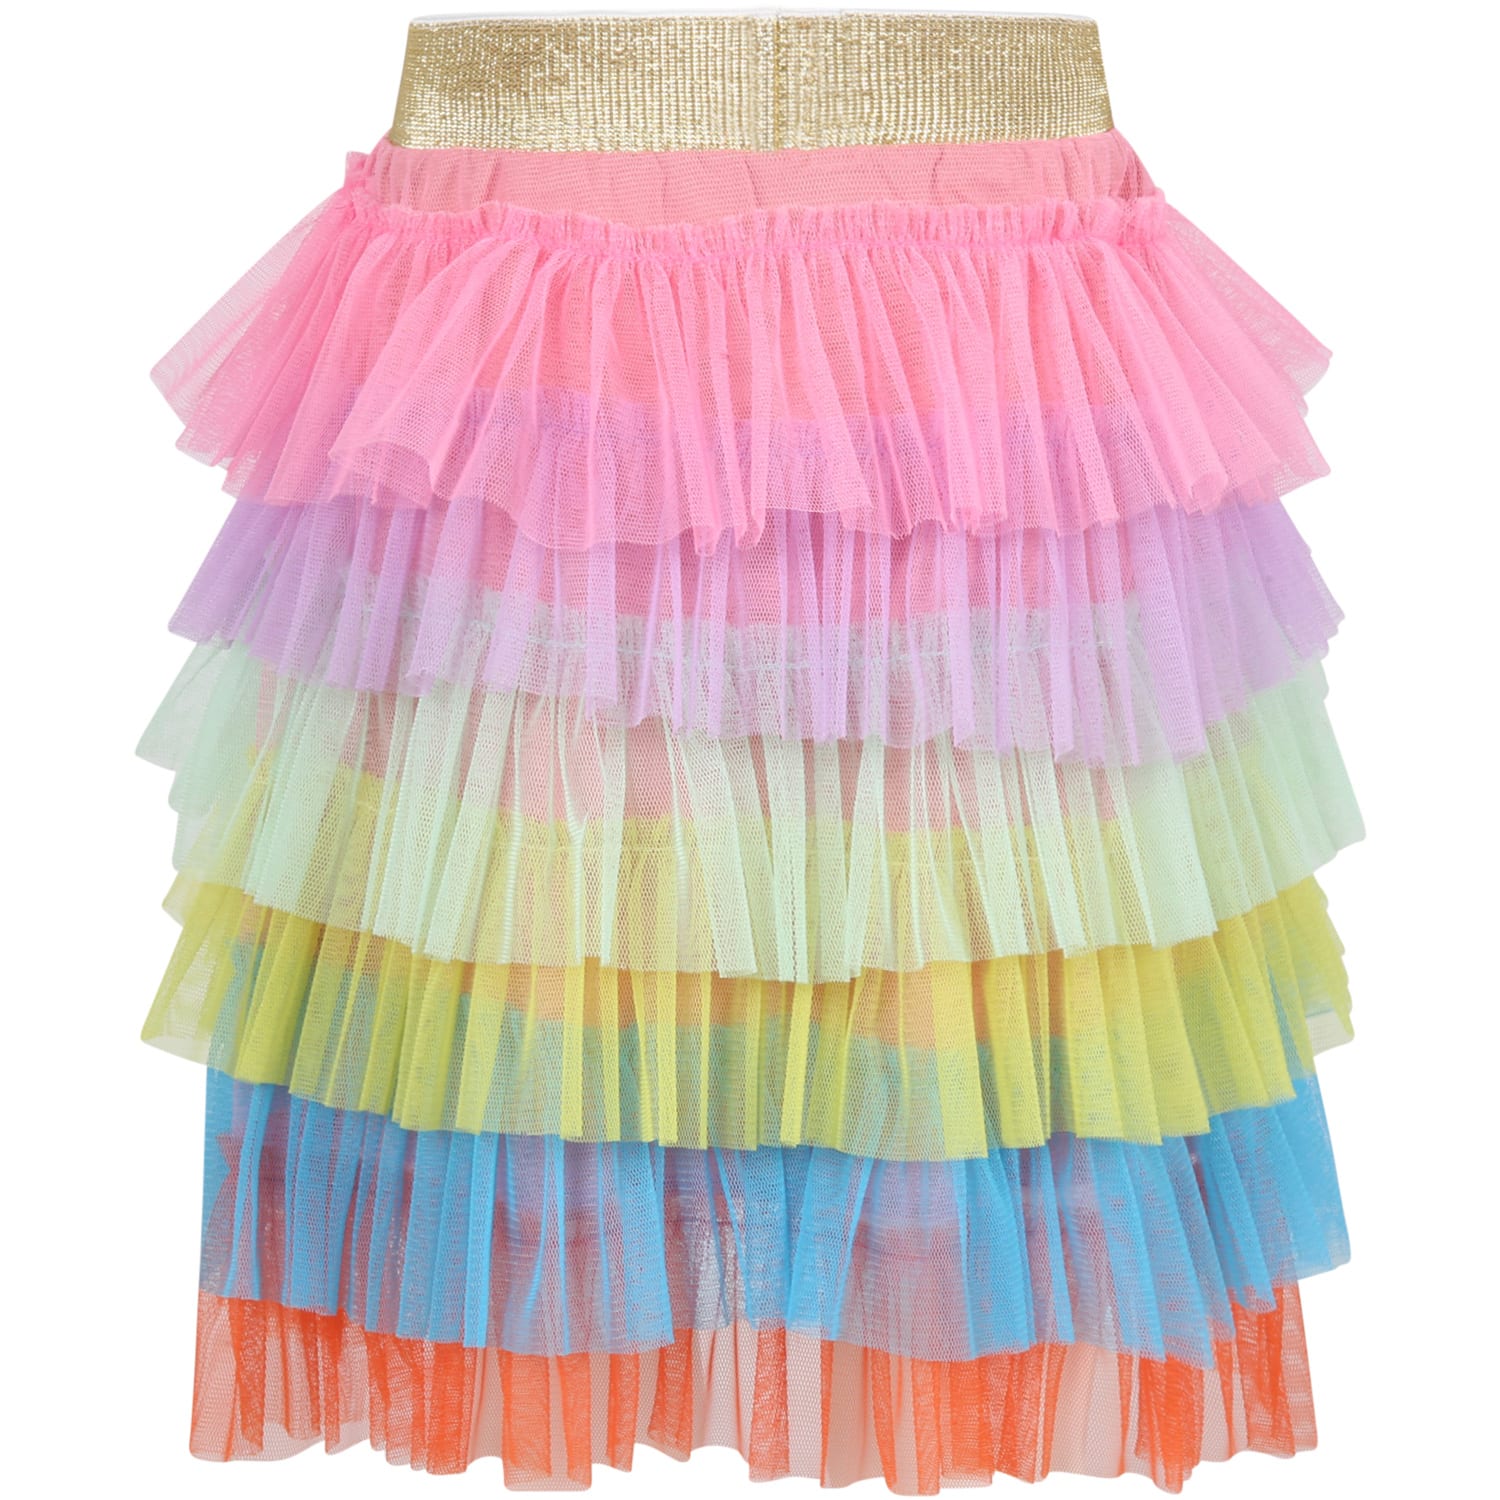 Raspberry Plum Multicolor Skirt For Girl With Tulle Ruffles